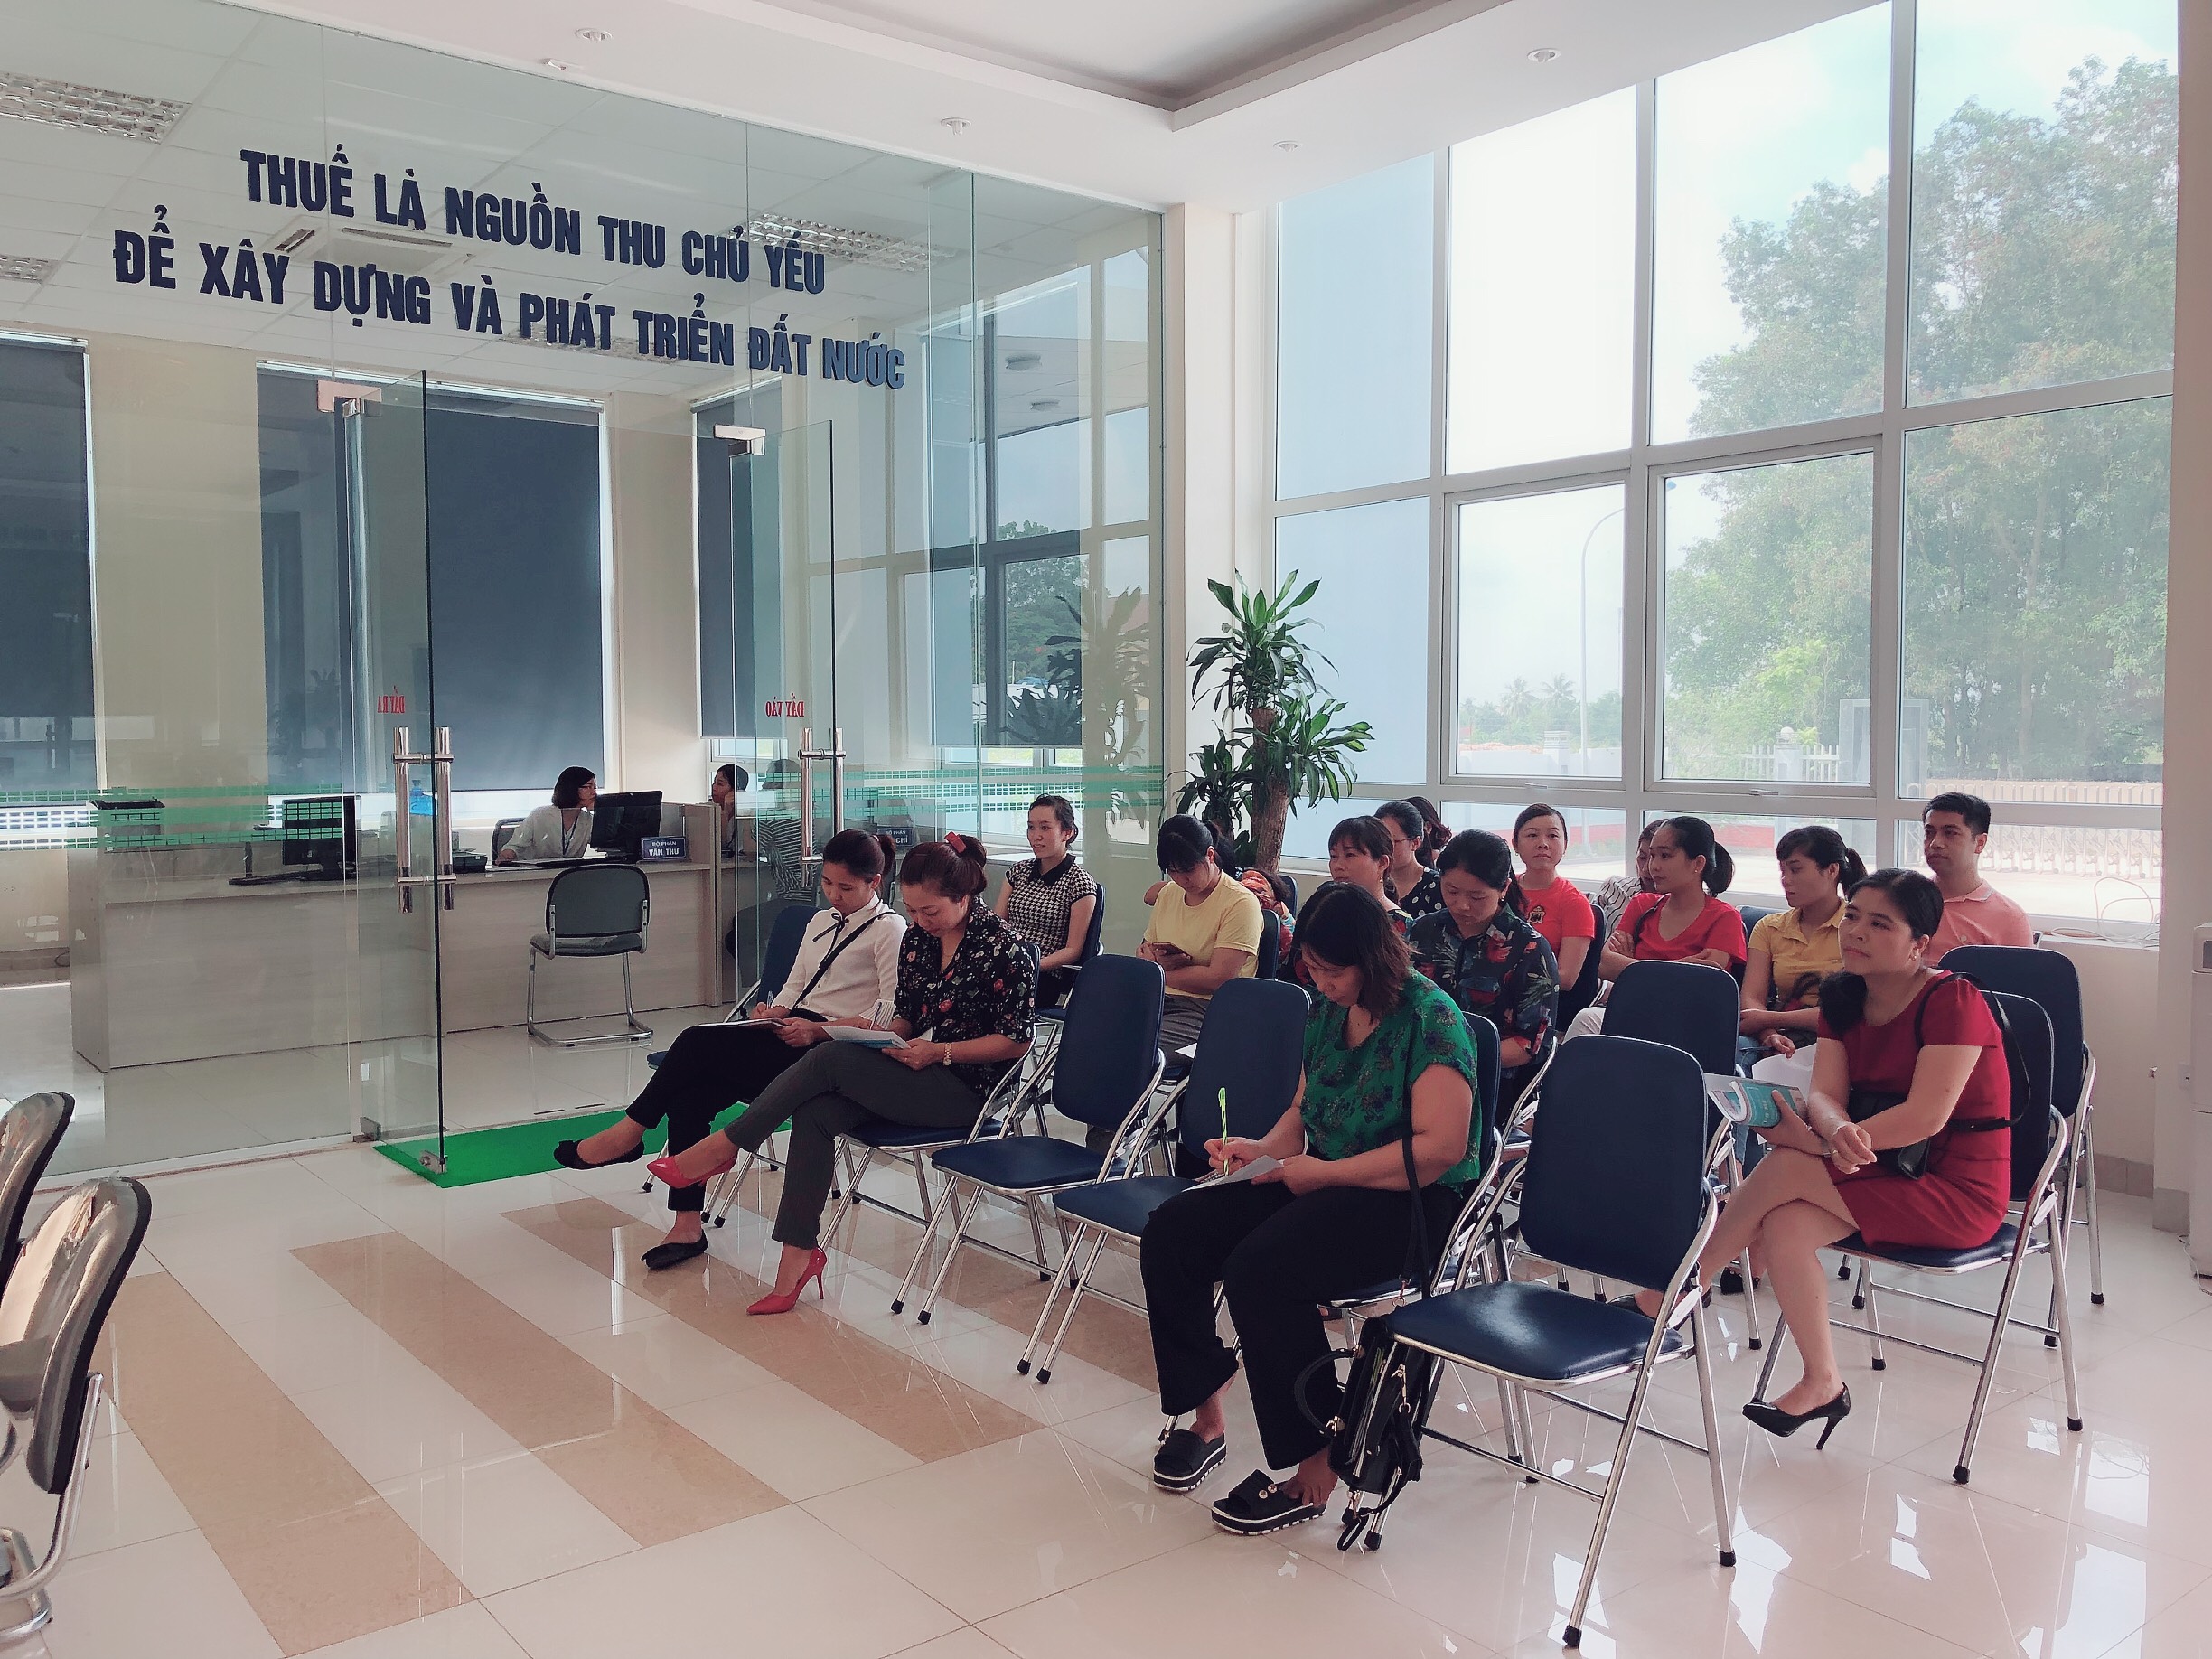 Người nộp thuế tìm hiểu thông tin về chính sách thuế tại Chi cục Thuế khu vực Uông Bí - Quảng Yên.